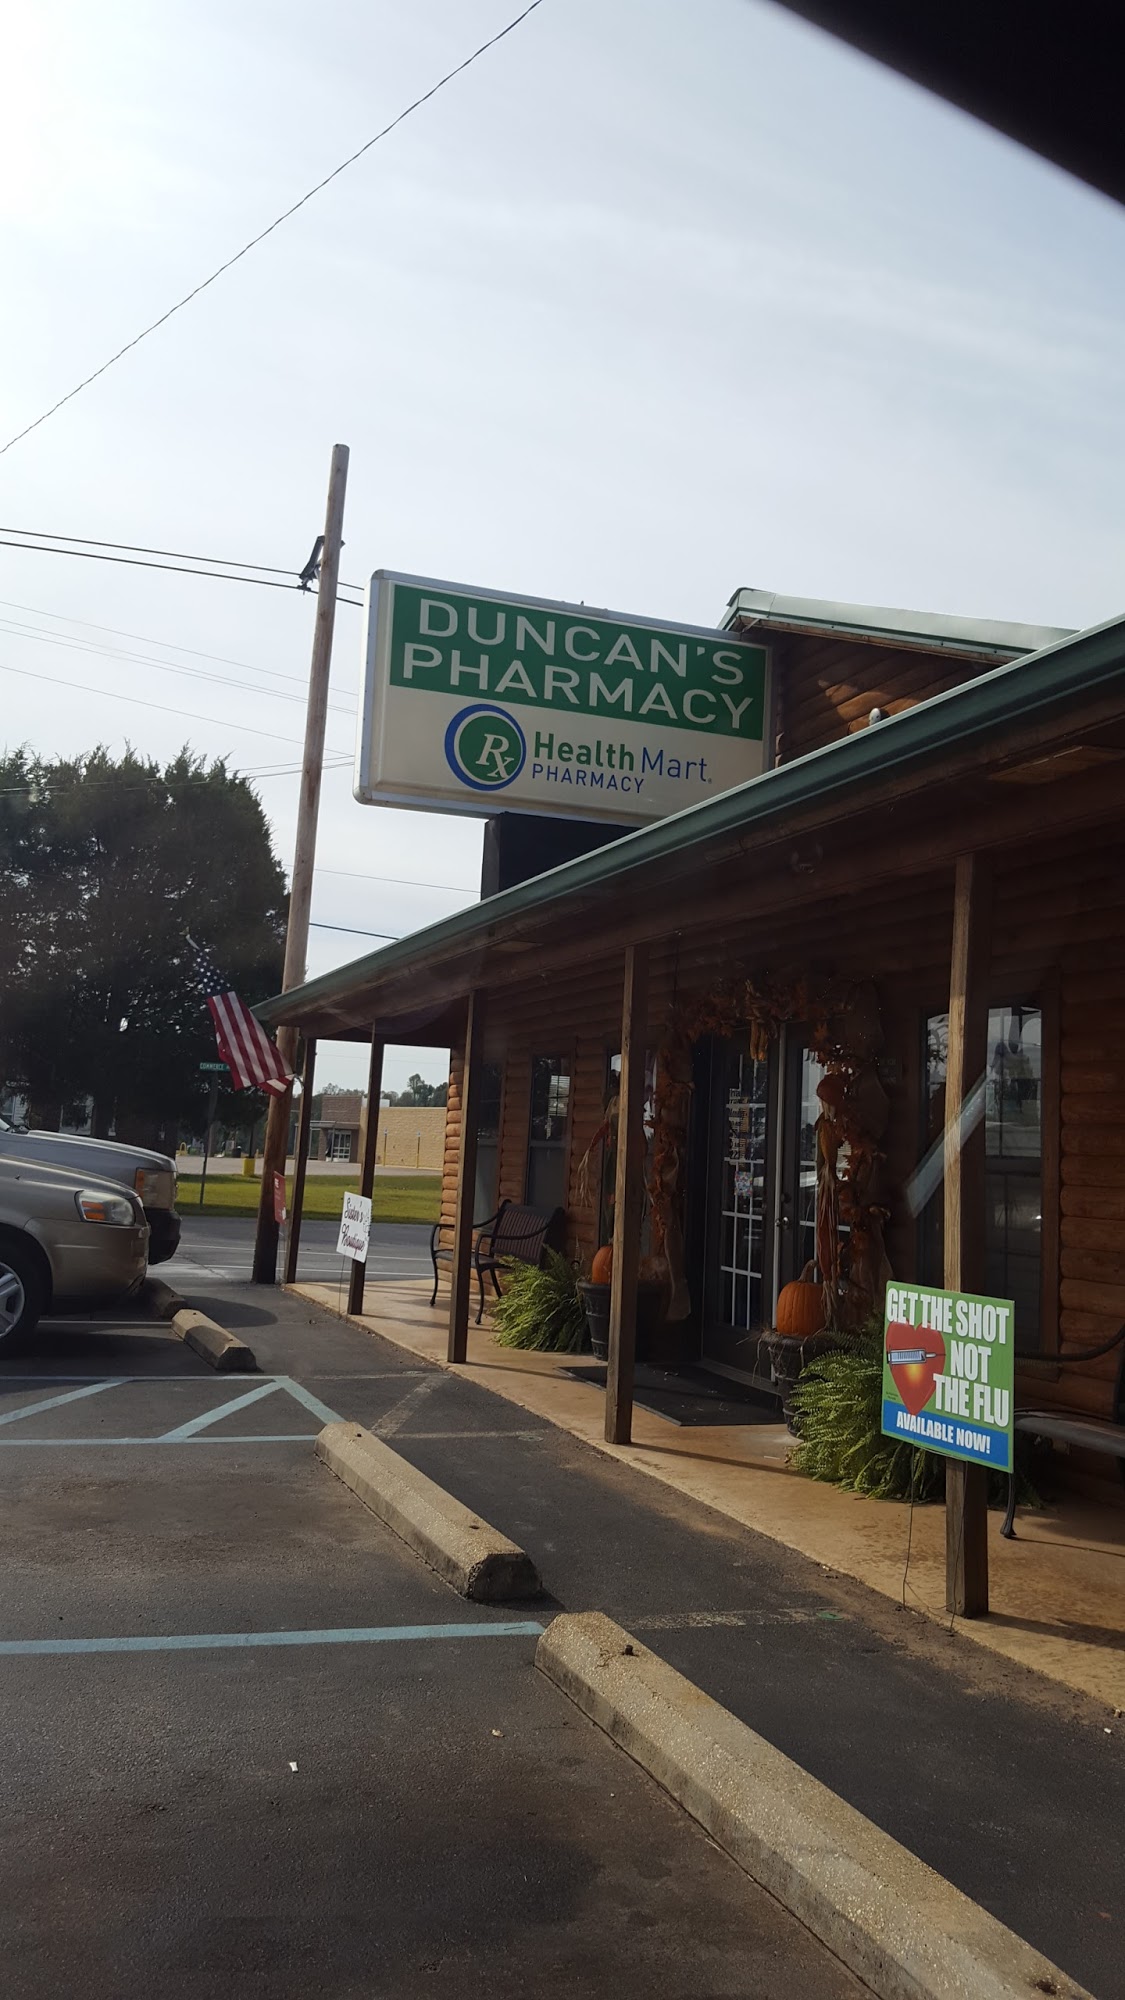 Duncan's Pharmacy